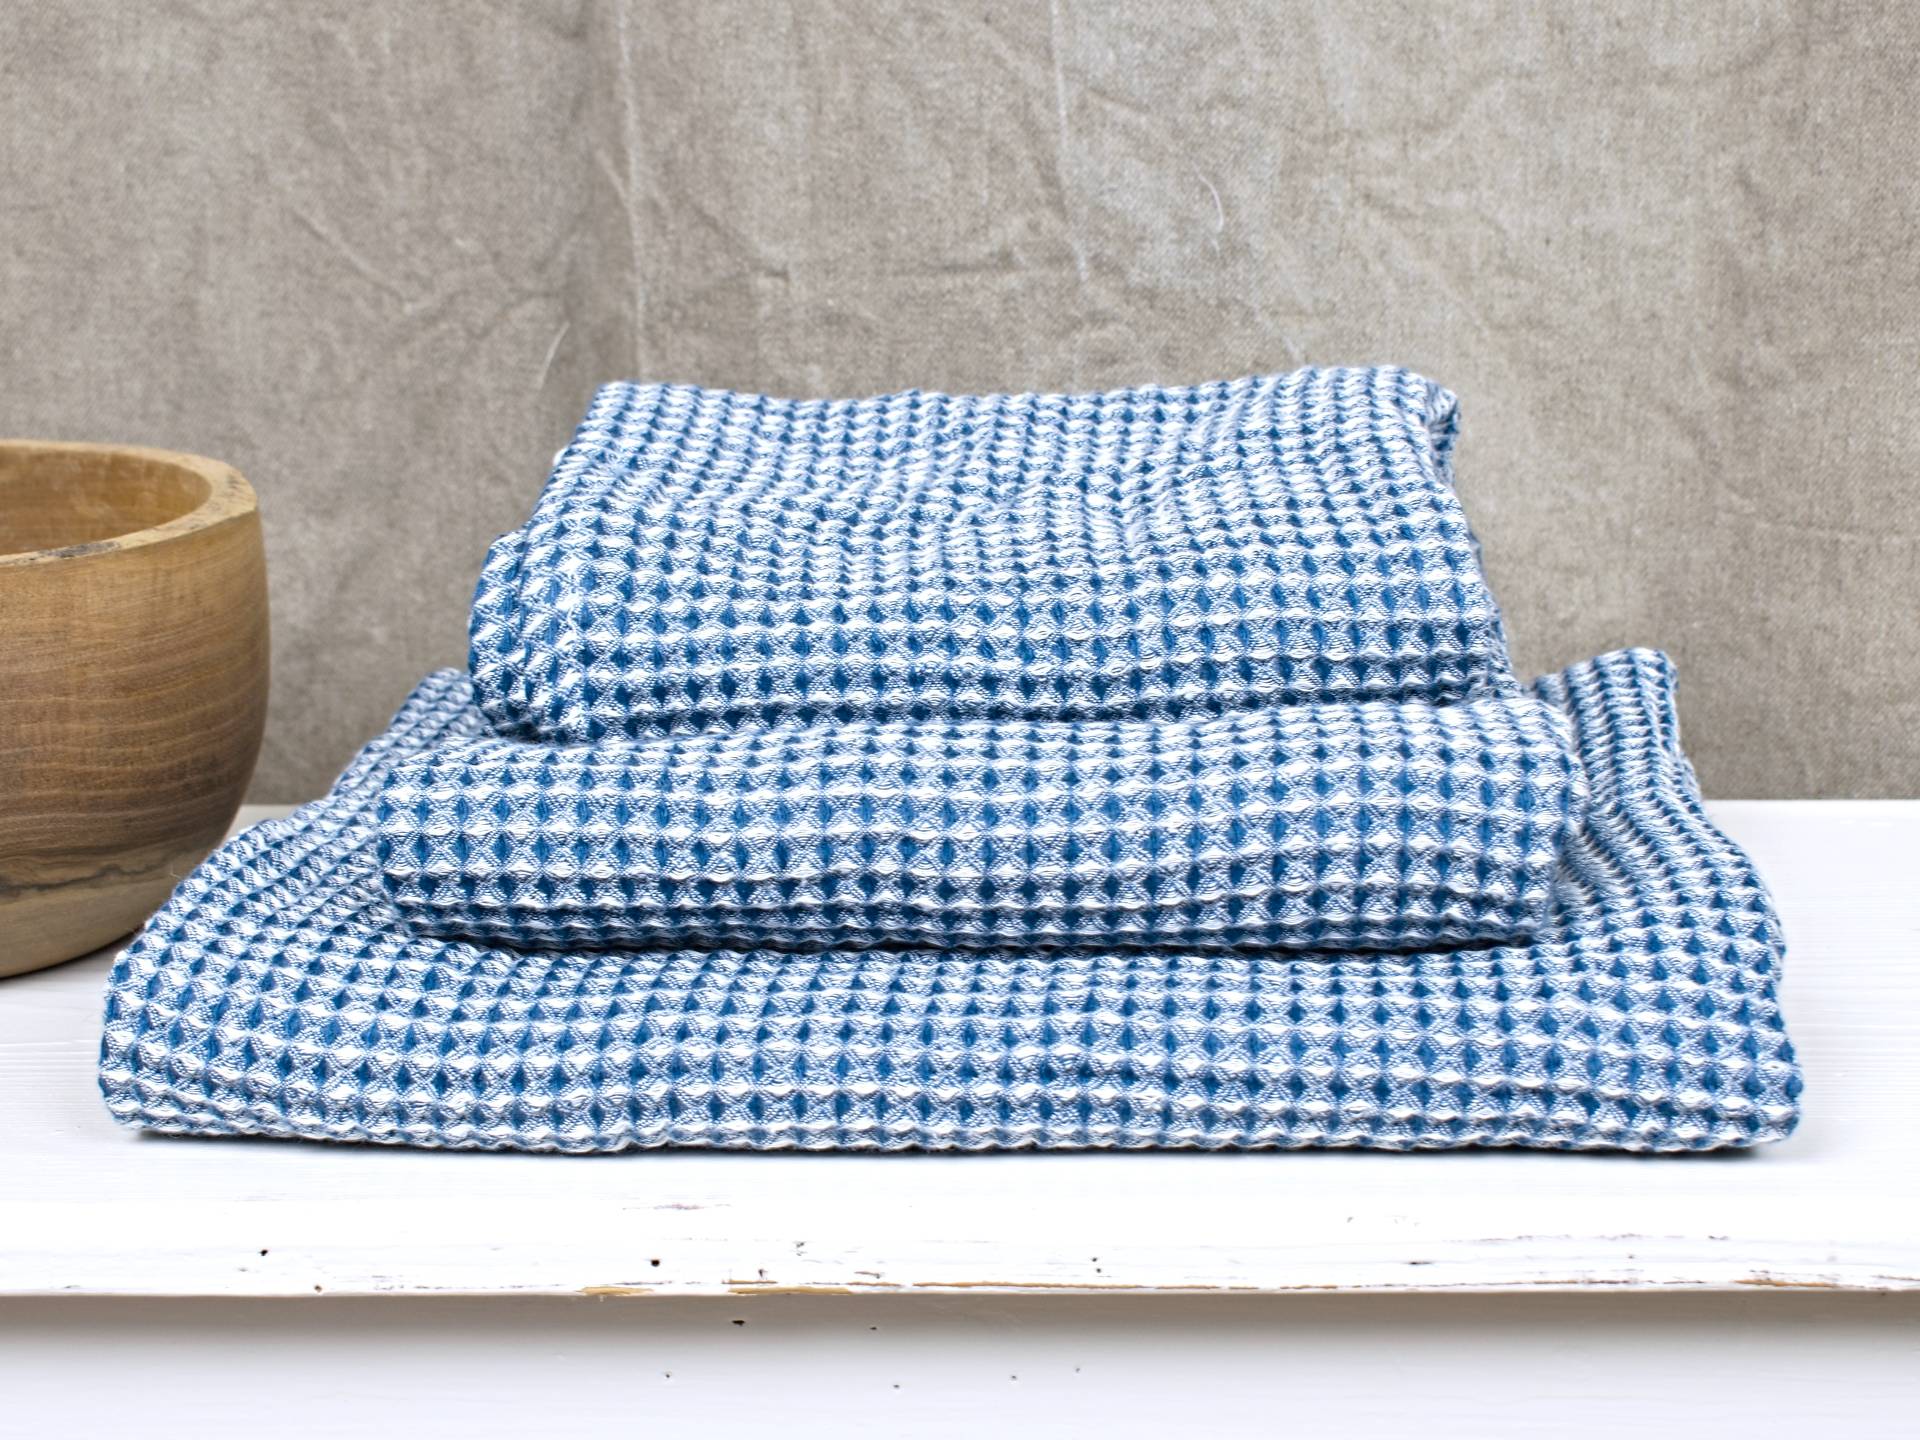 Lněný ručník vaflový modrý 75 x 135 cm